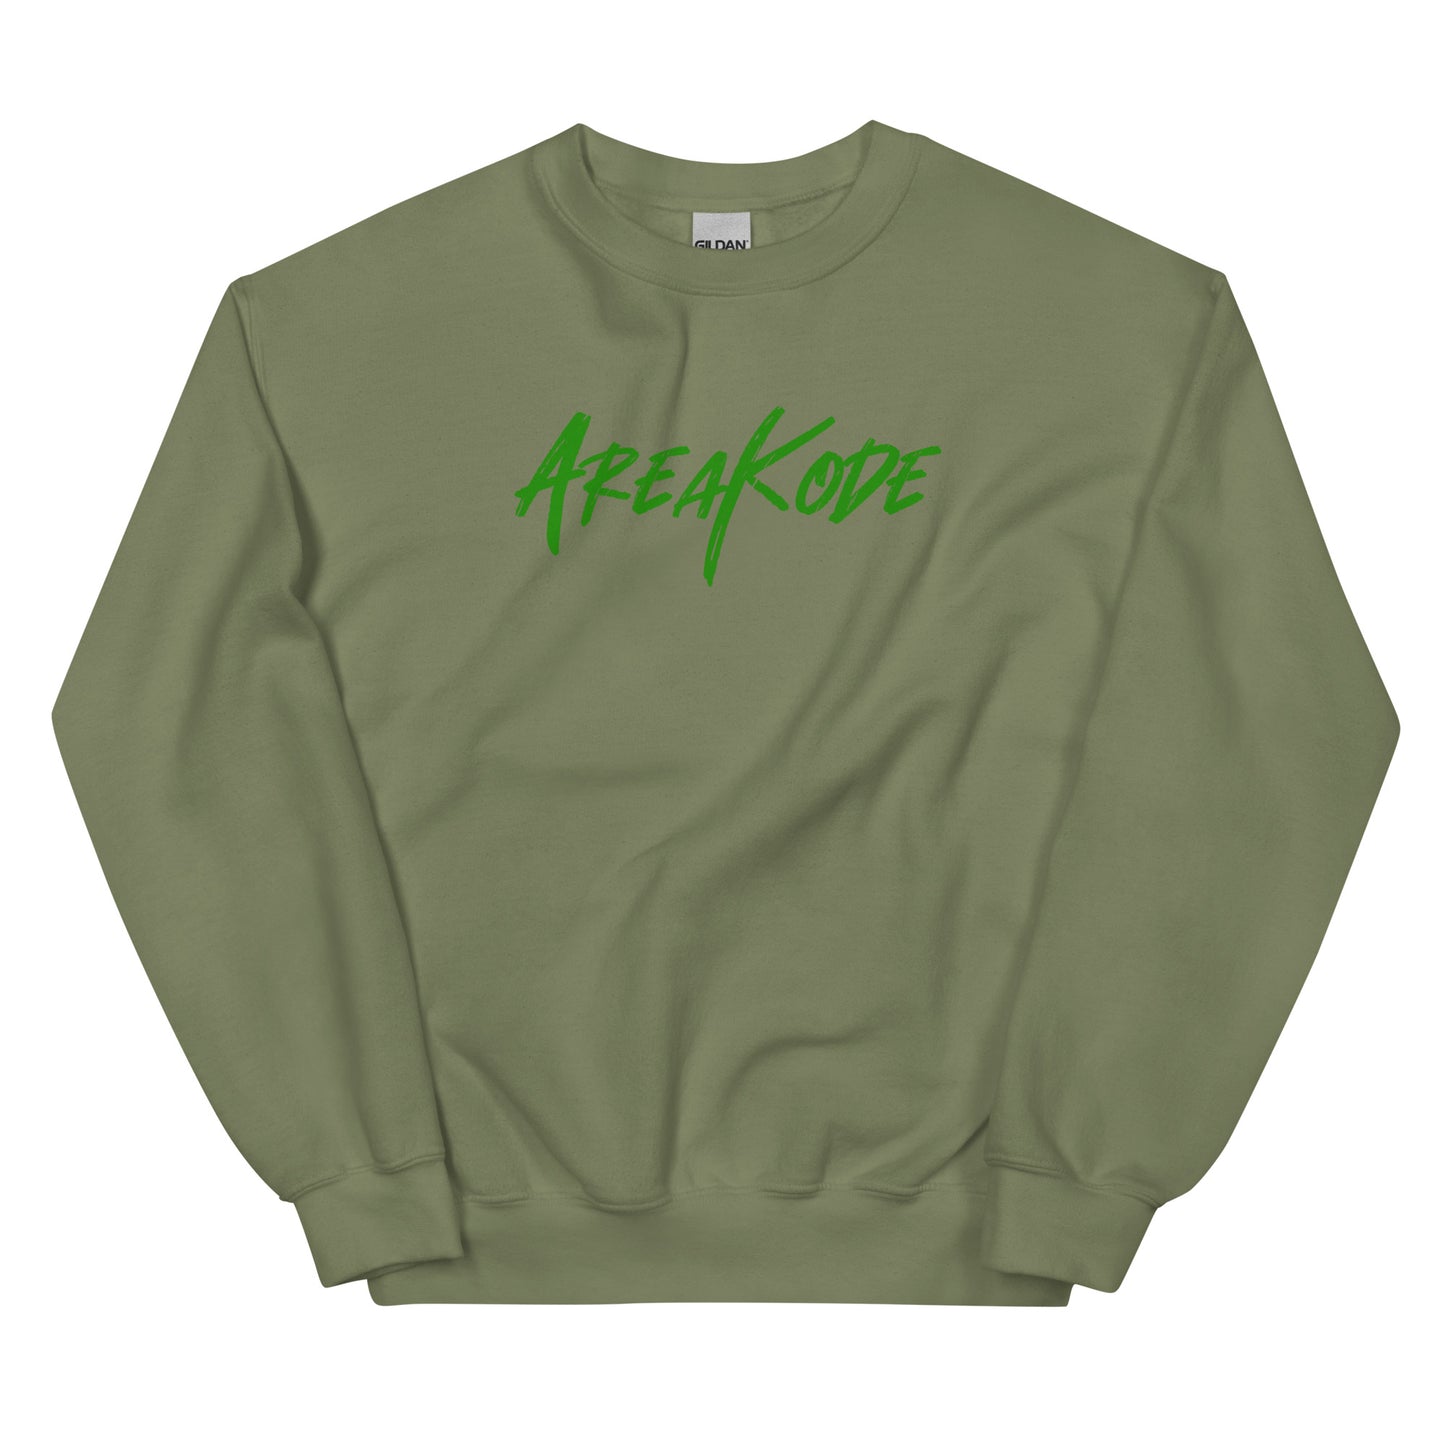 AreaKode - Unisex Crewneck (green)